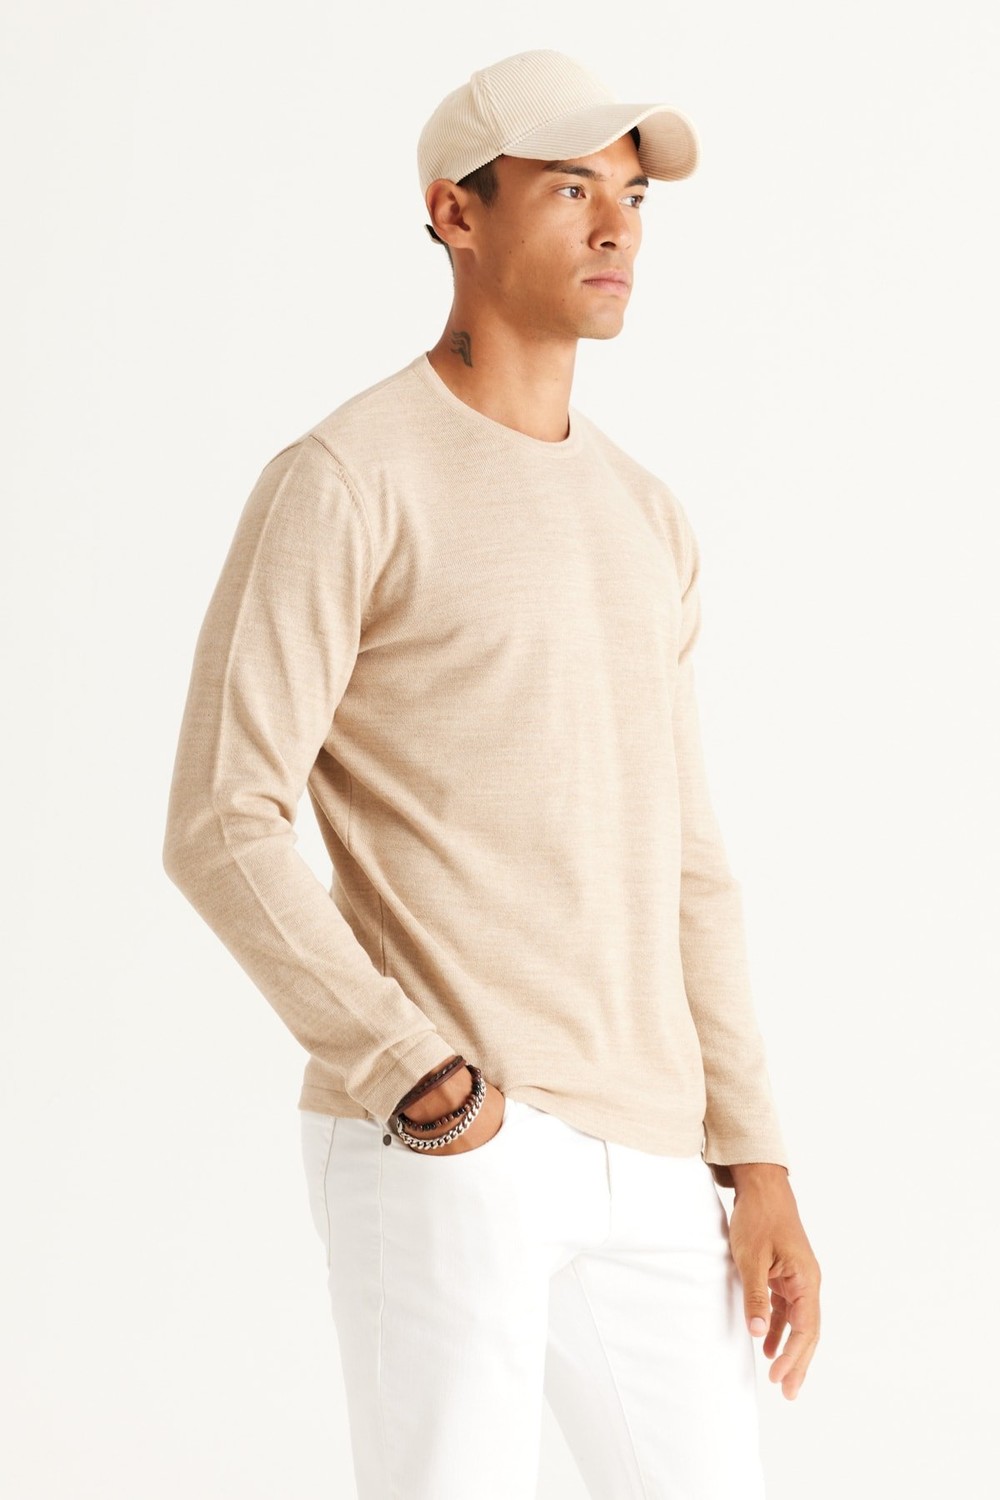 AC&Co / Altınyıldız Classics Men's Beige Standard Fit Normal Cut, Crew Neck Knitwear Sweater.